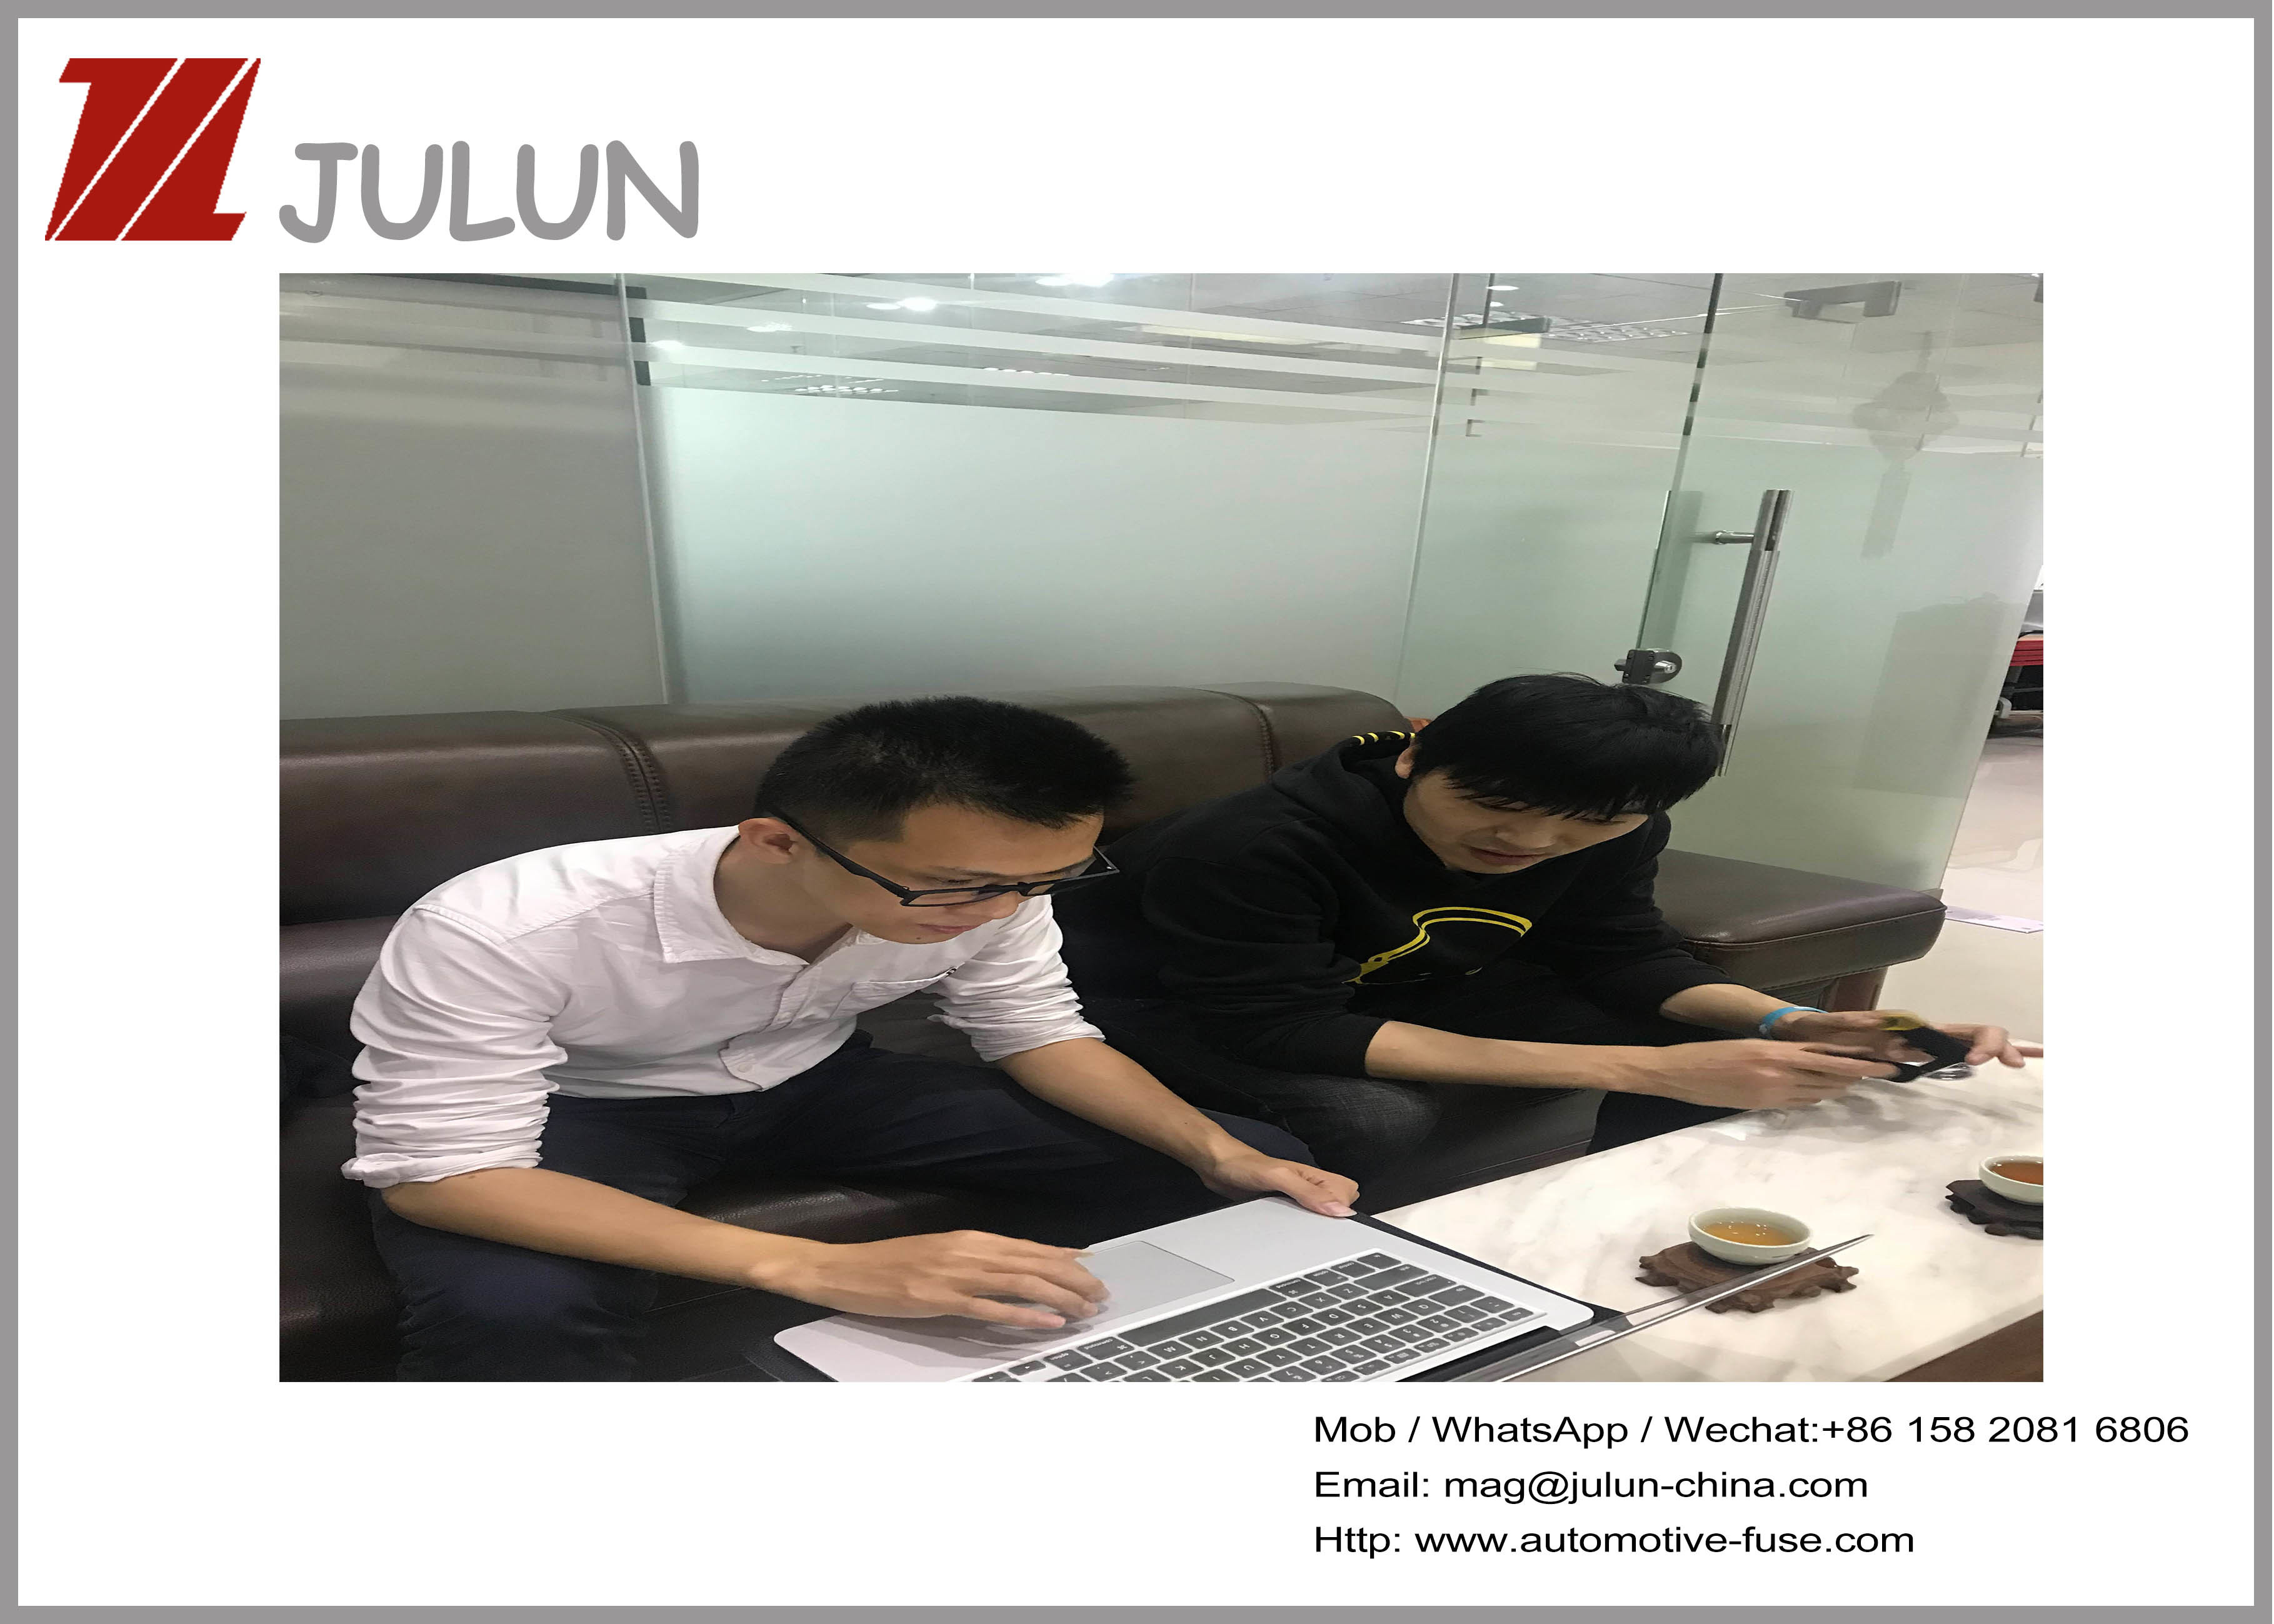 Китай dongguan Julun  electronics co.,ltd Профиль компании